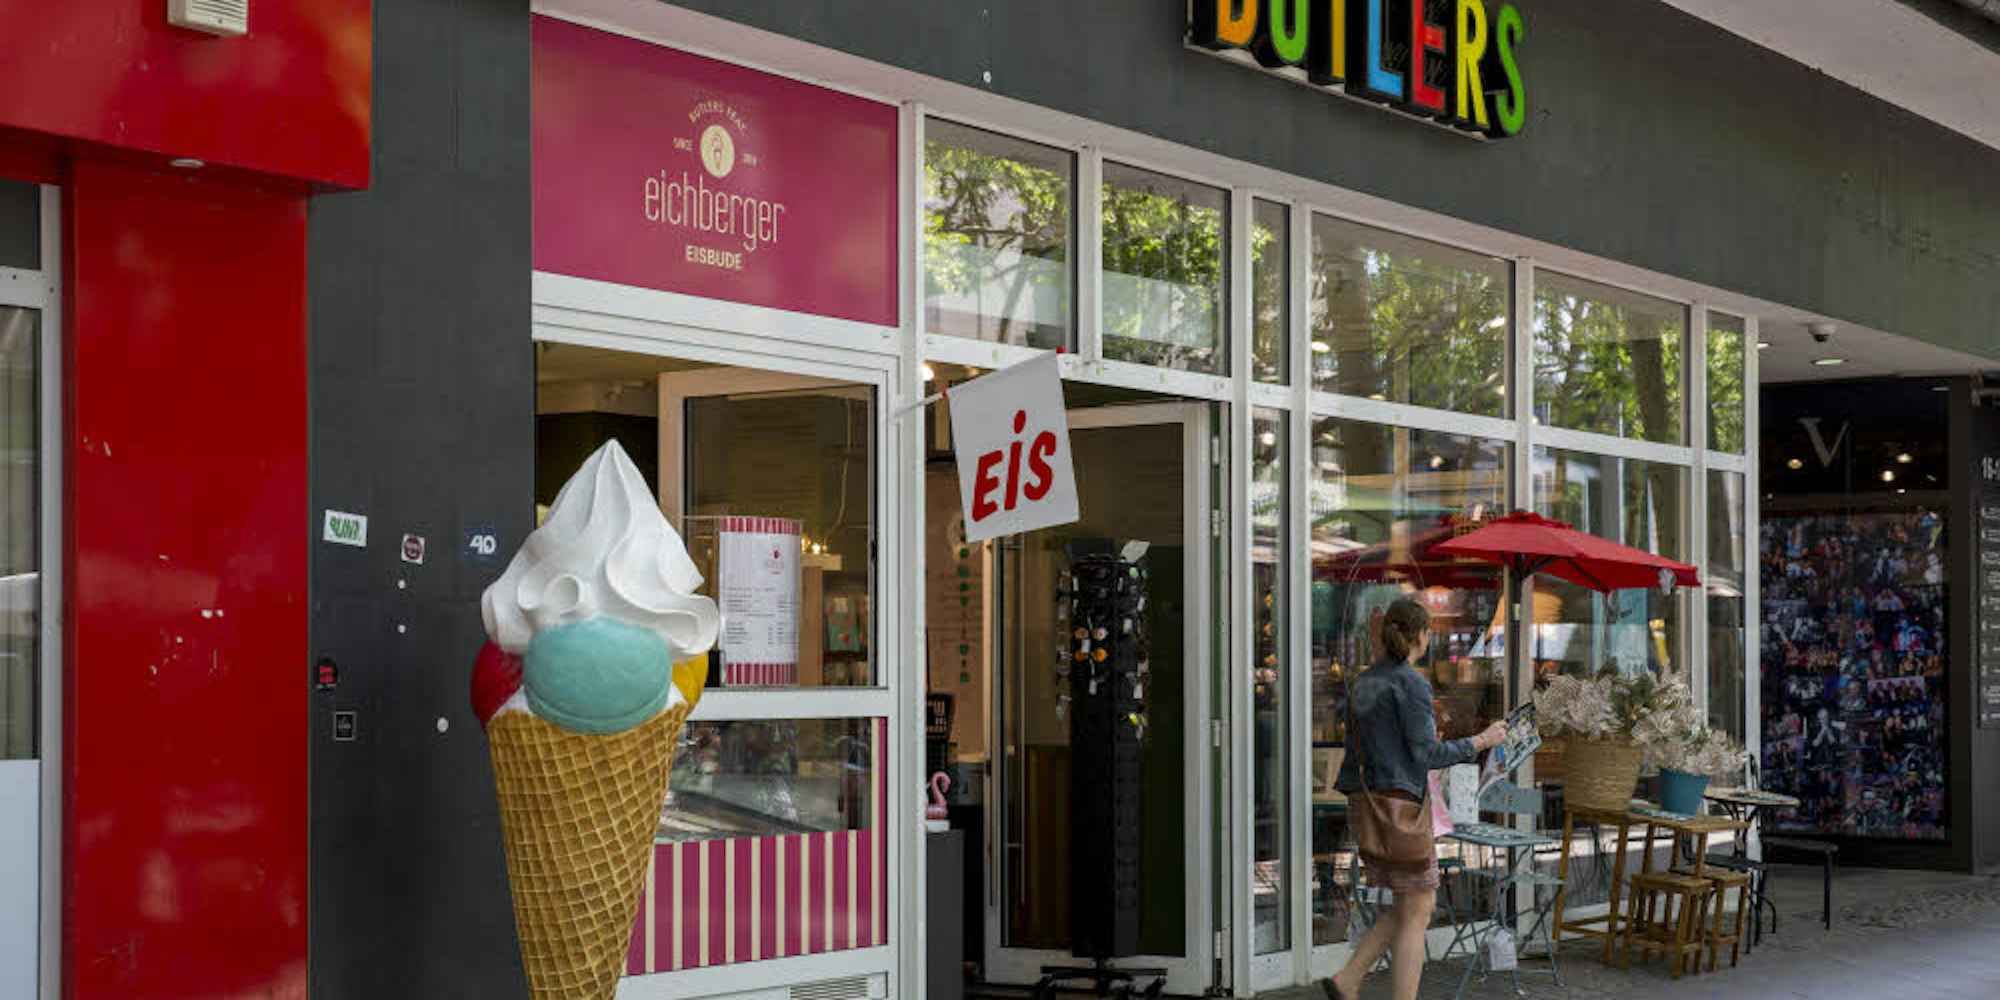 Seit Neuestem wird in der Butlers-Filiale am Hohenzollernring auch Eis verkauft.